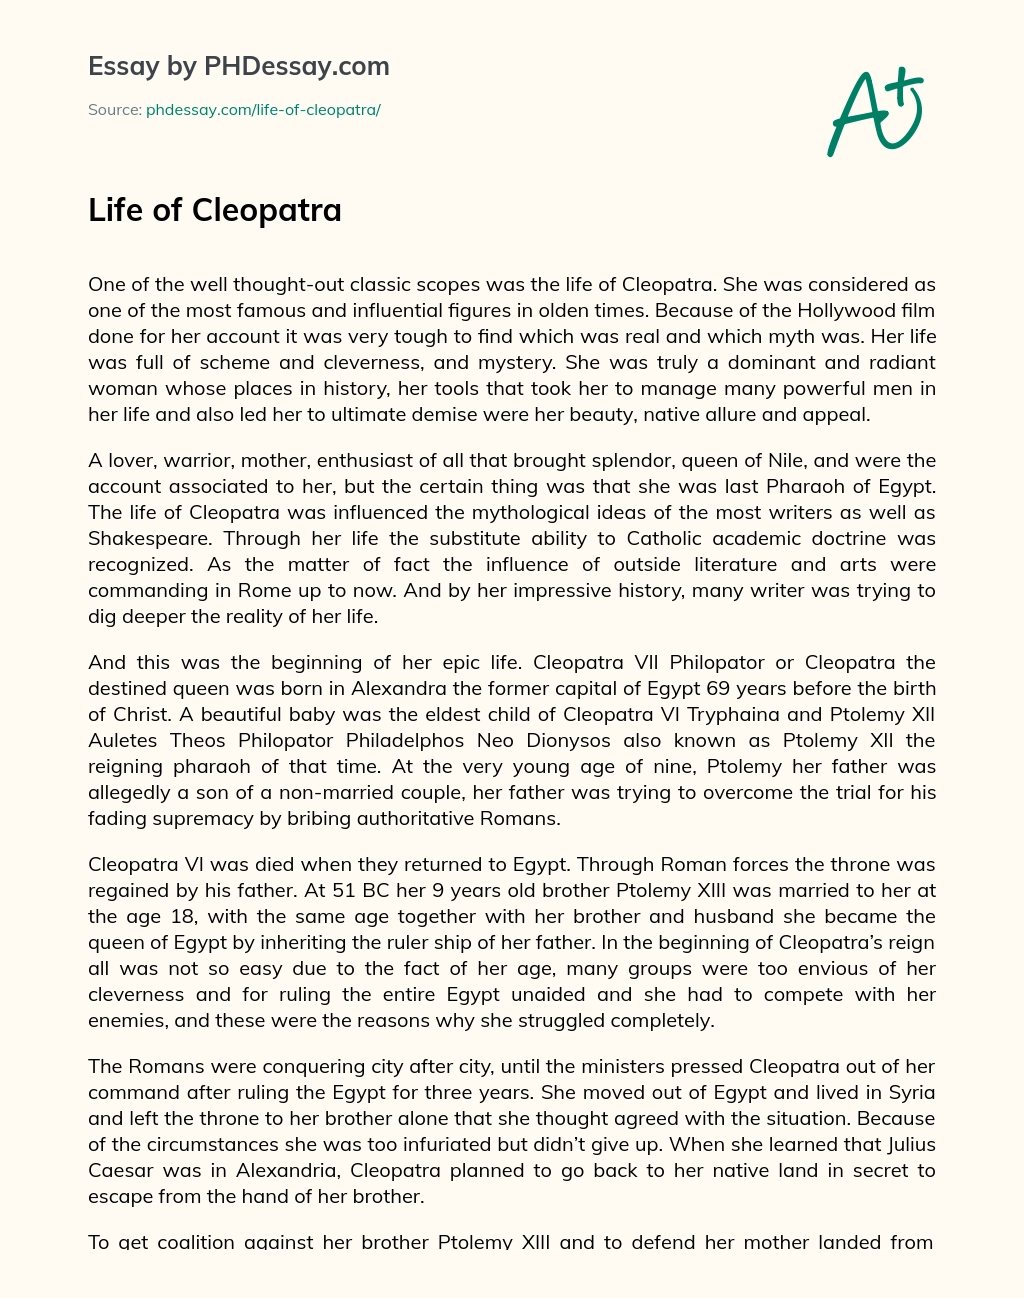 Life of Cleopatra essay